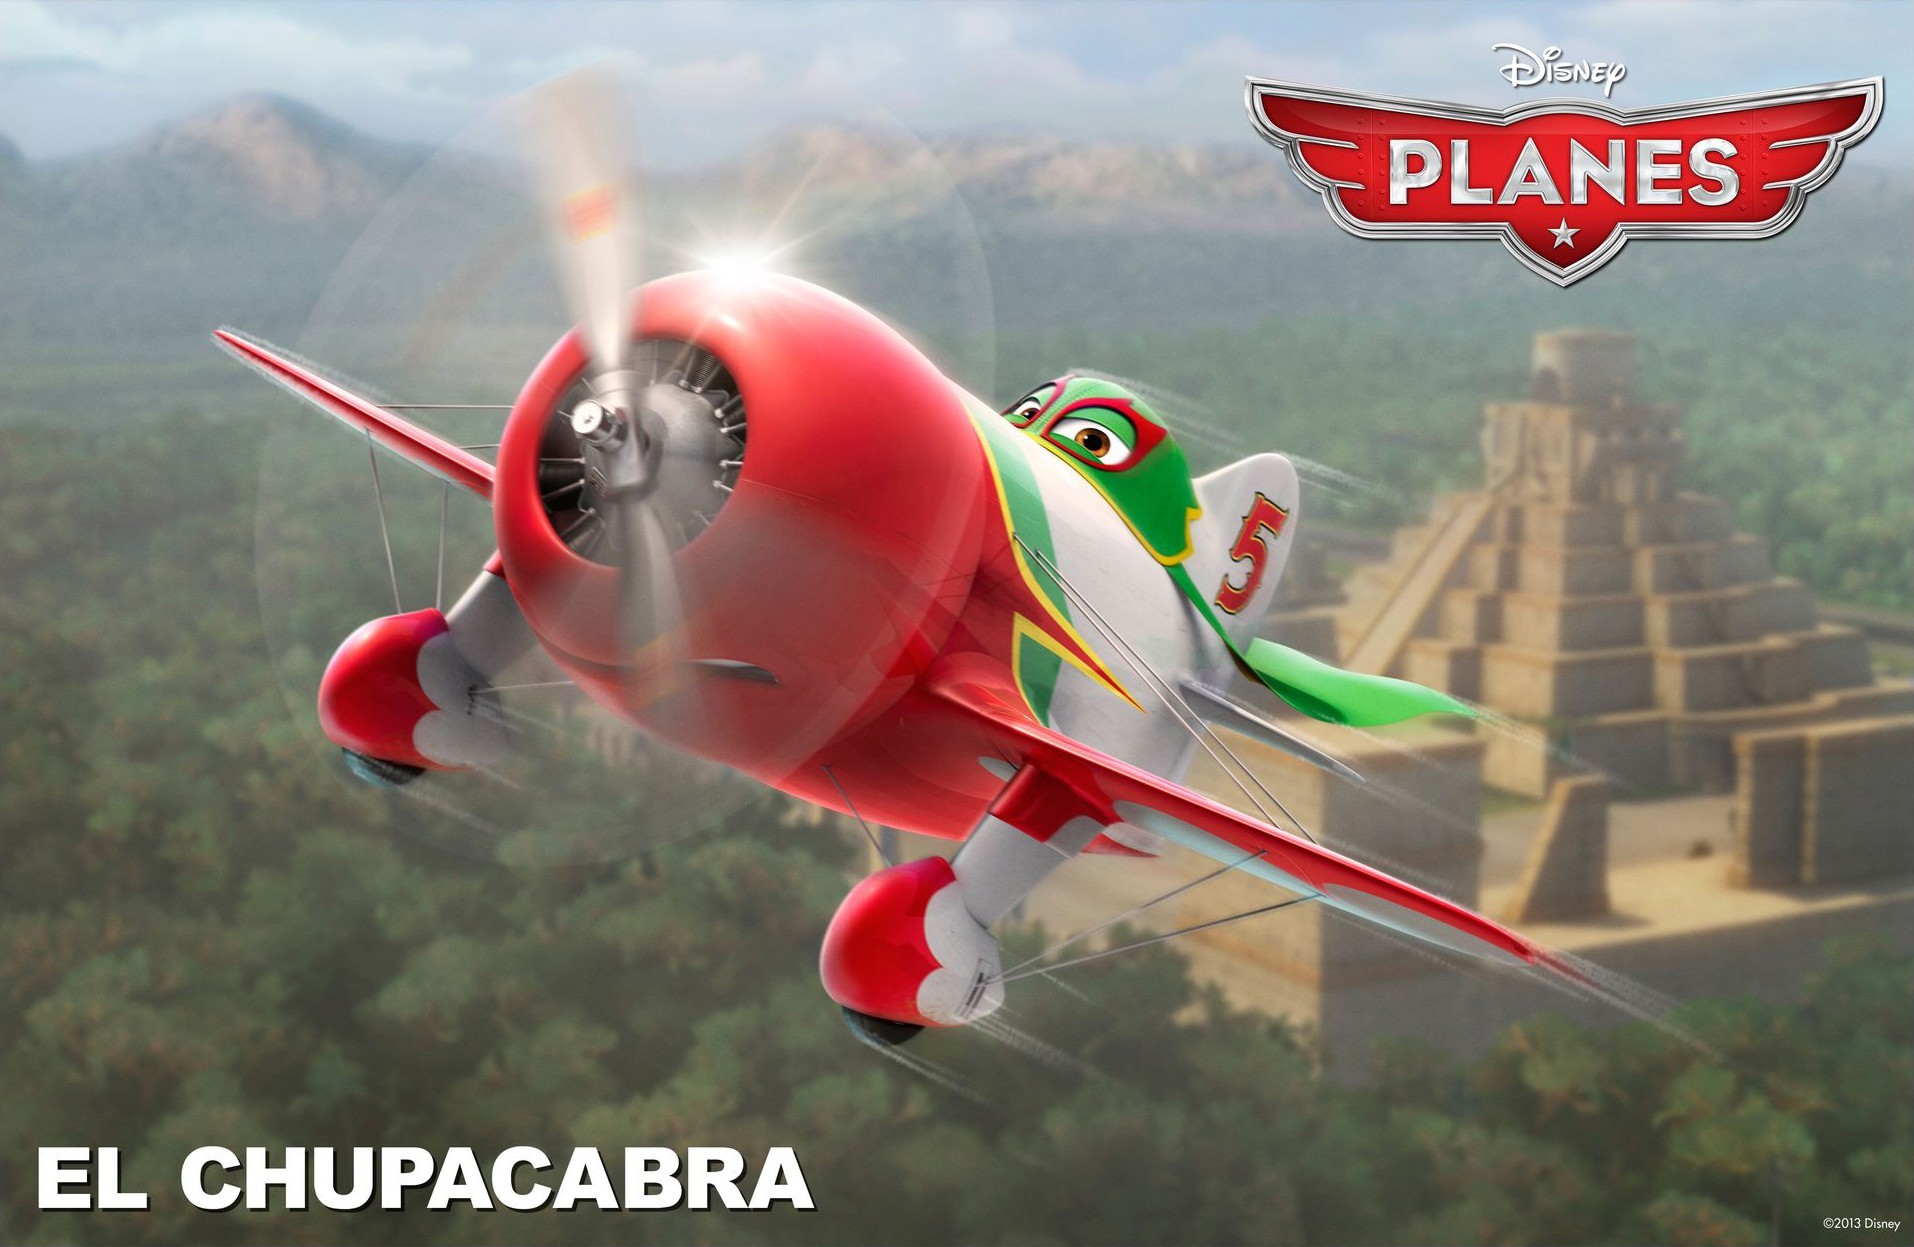 El Chupacabra from Walt Disney Pictures' Planes (2013)